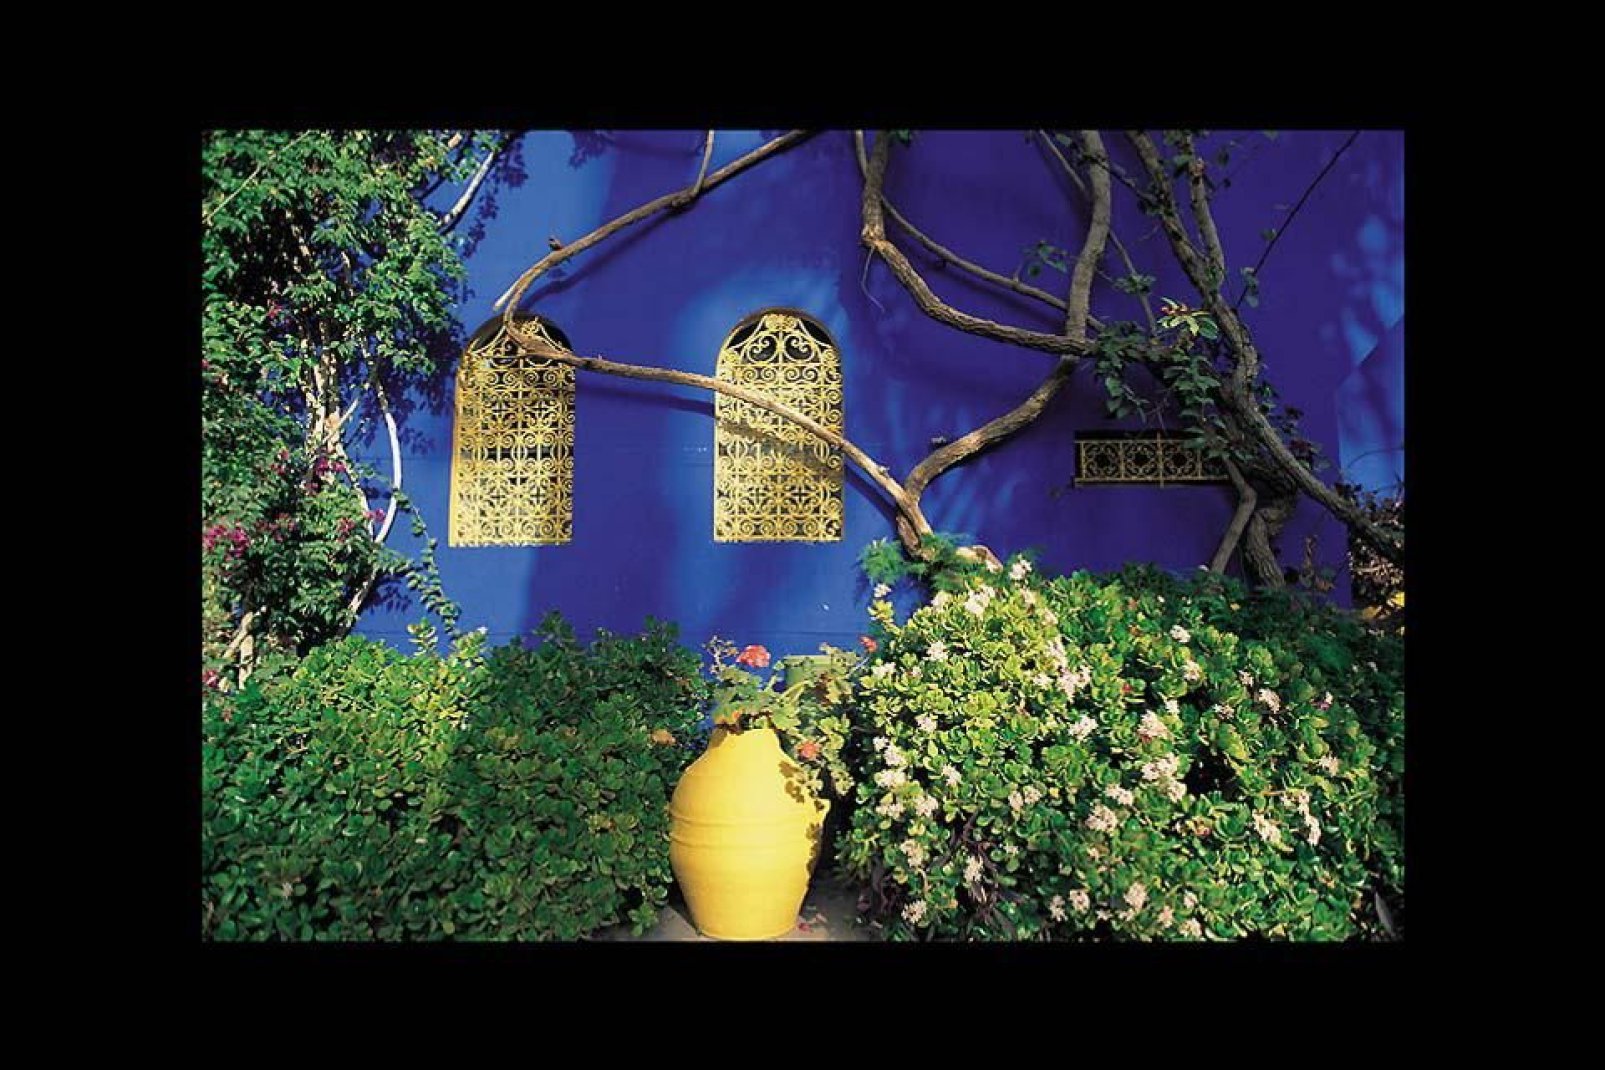 El jardín botánico de Majorelle es una de las atracciones más importantes de Marrakech. Concentra espacios poco habituales para crear un entorno con encanto.